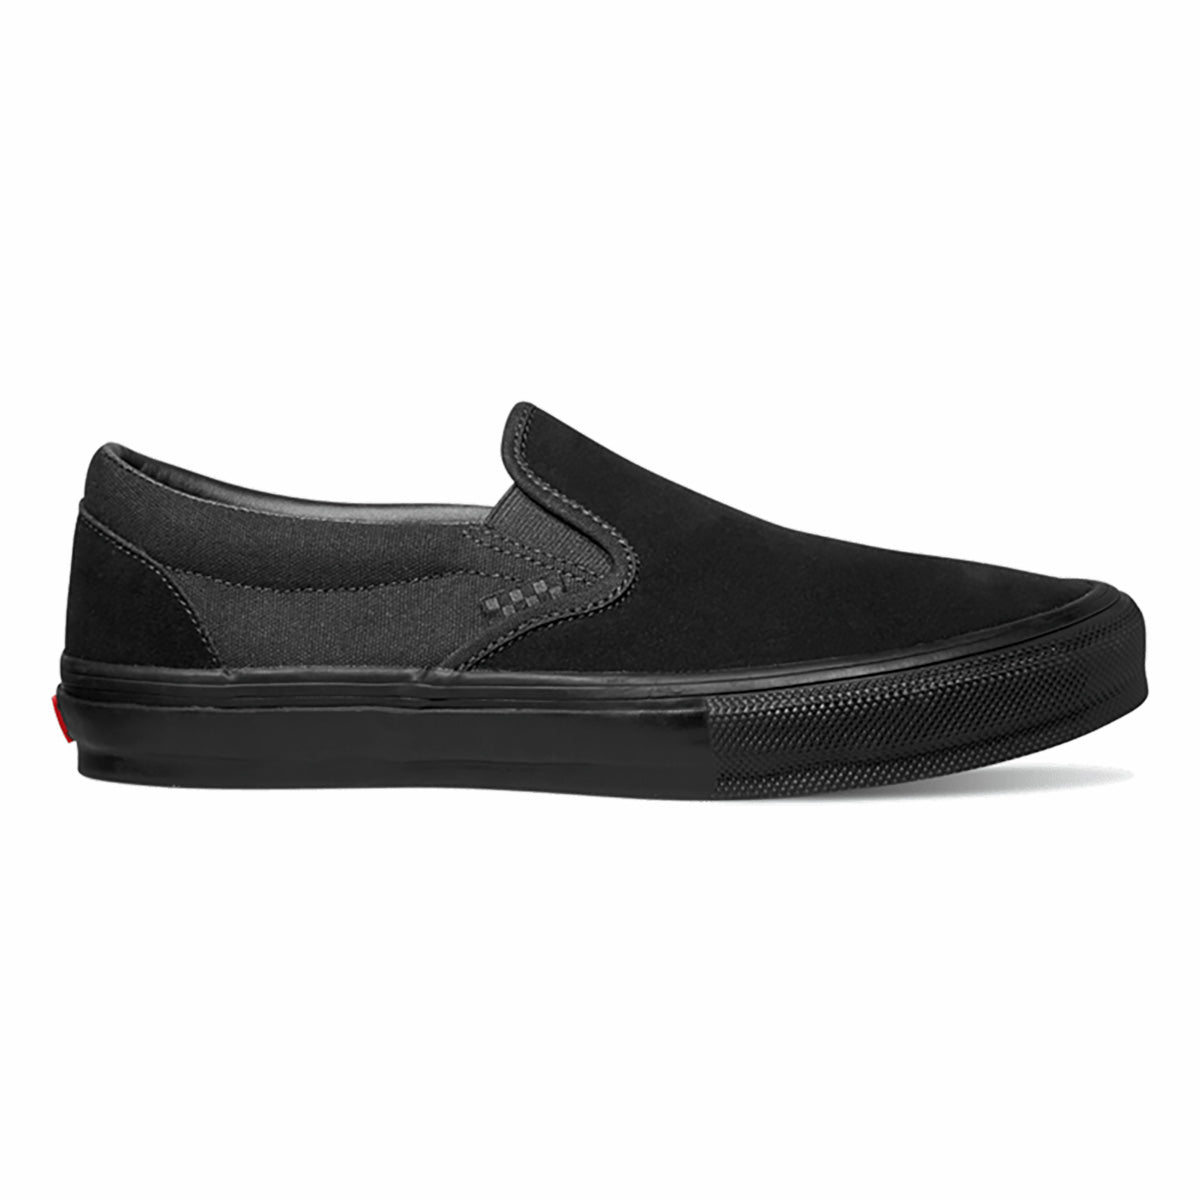 Black Skate Slip-On Vans Skateboard Shoe